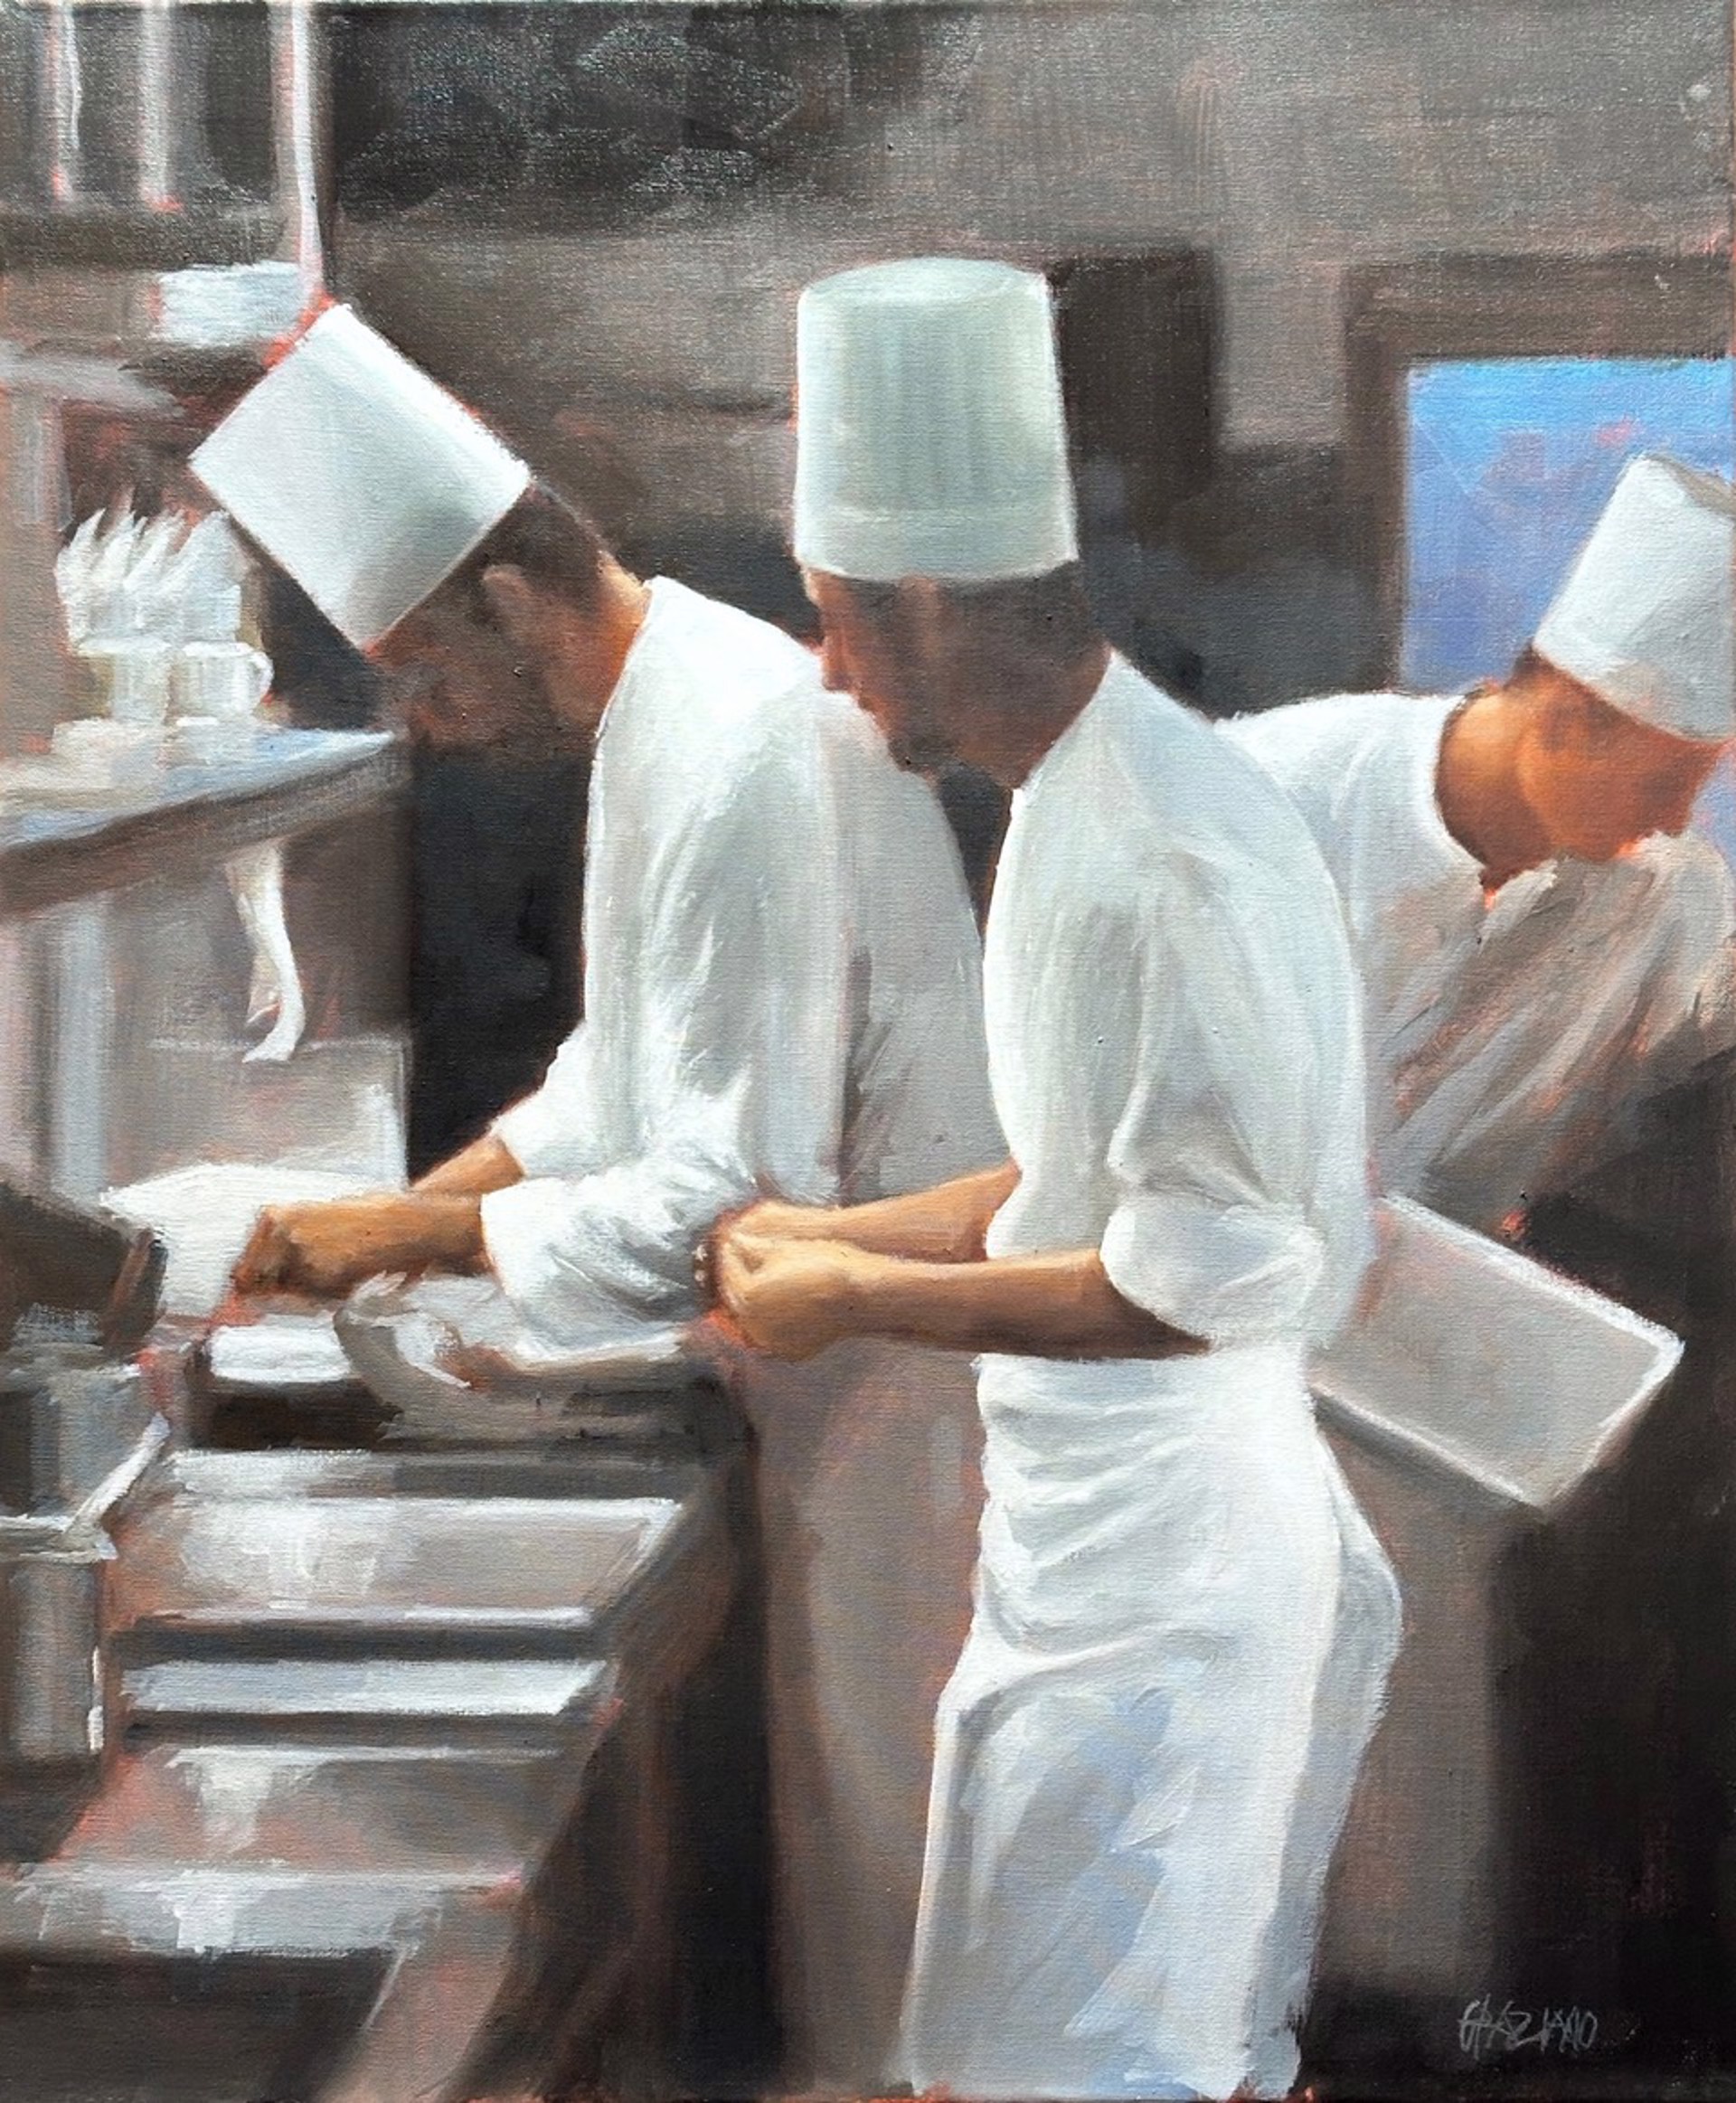 Three Chefs by Dan Graziano